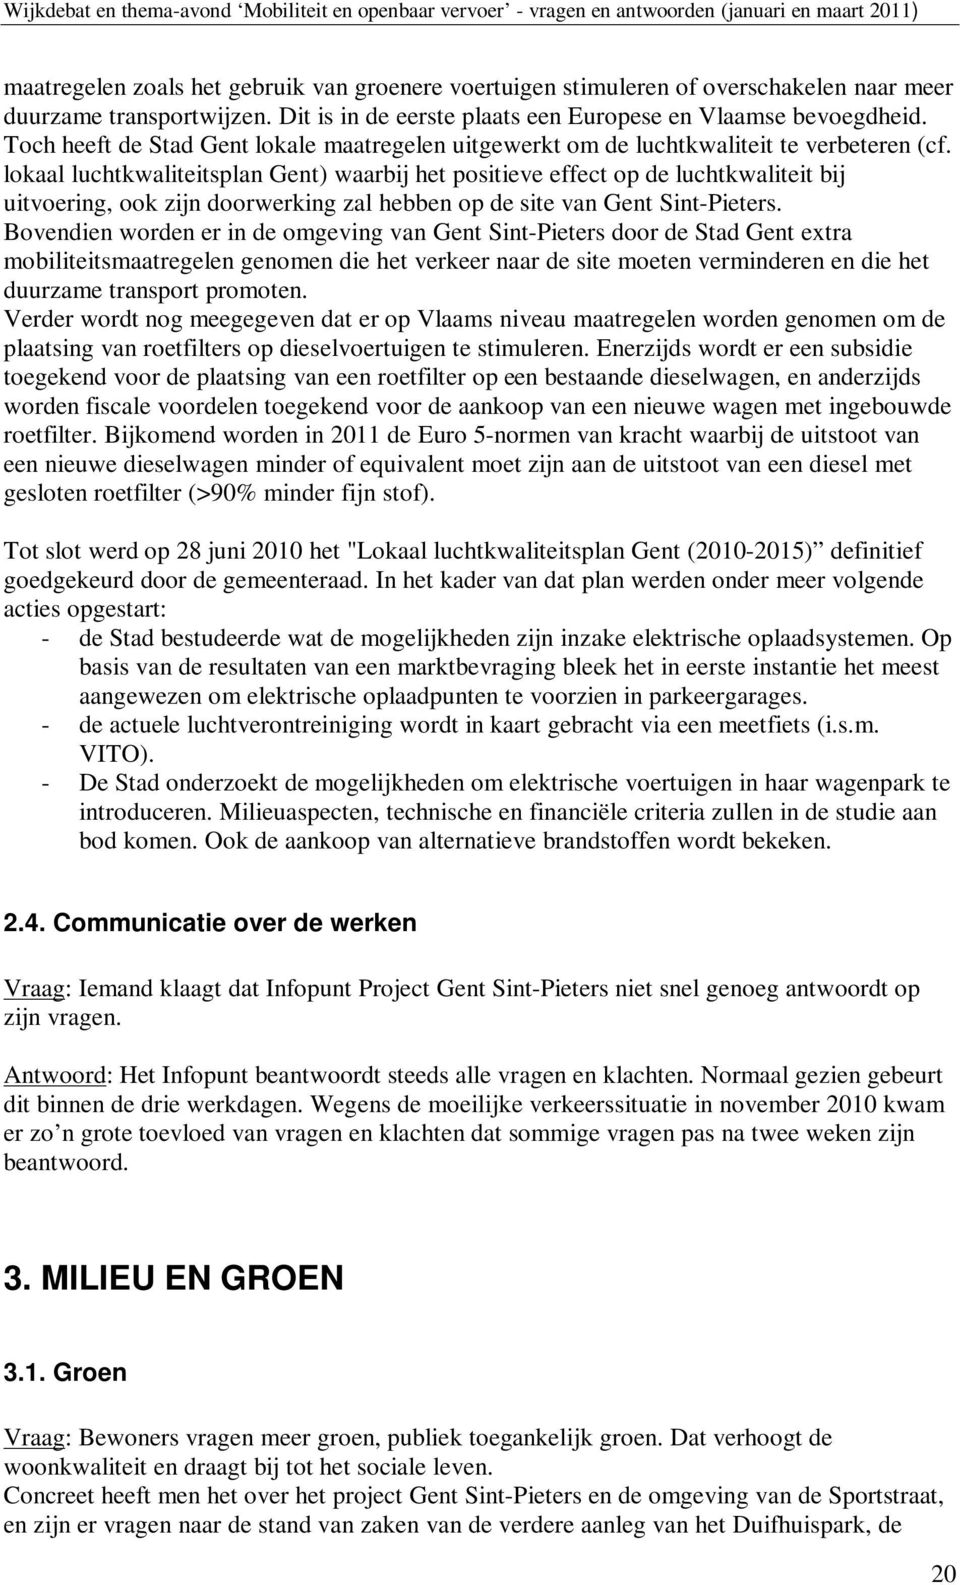 lokaal luchtkwaliteitsplan Gent) waarbij het positieve effect op de luchtkwaliteit bij uitvoering, ook zijn doorwerking zal hebben op de site van Gent Sint-Pieters.